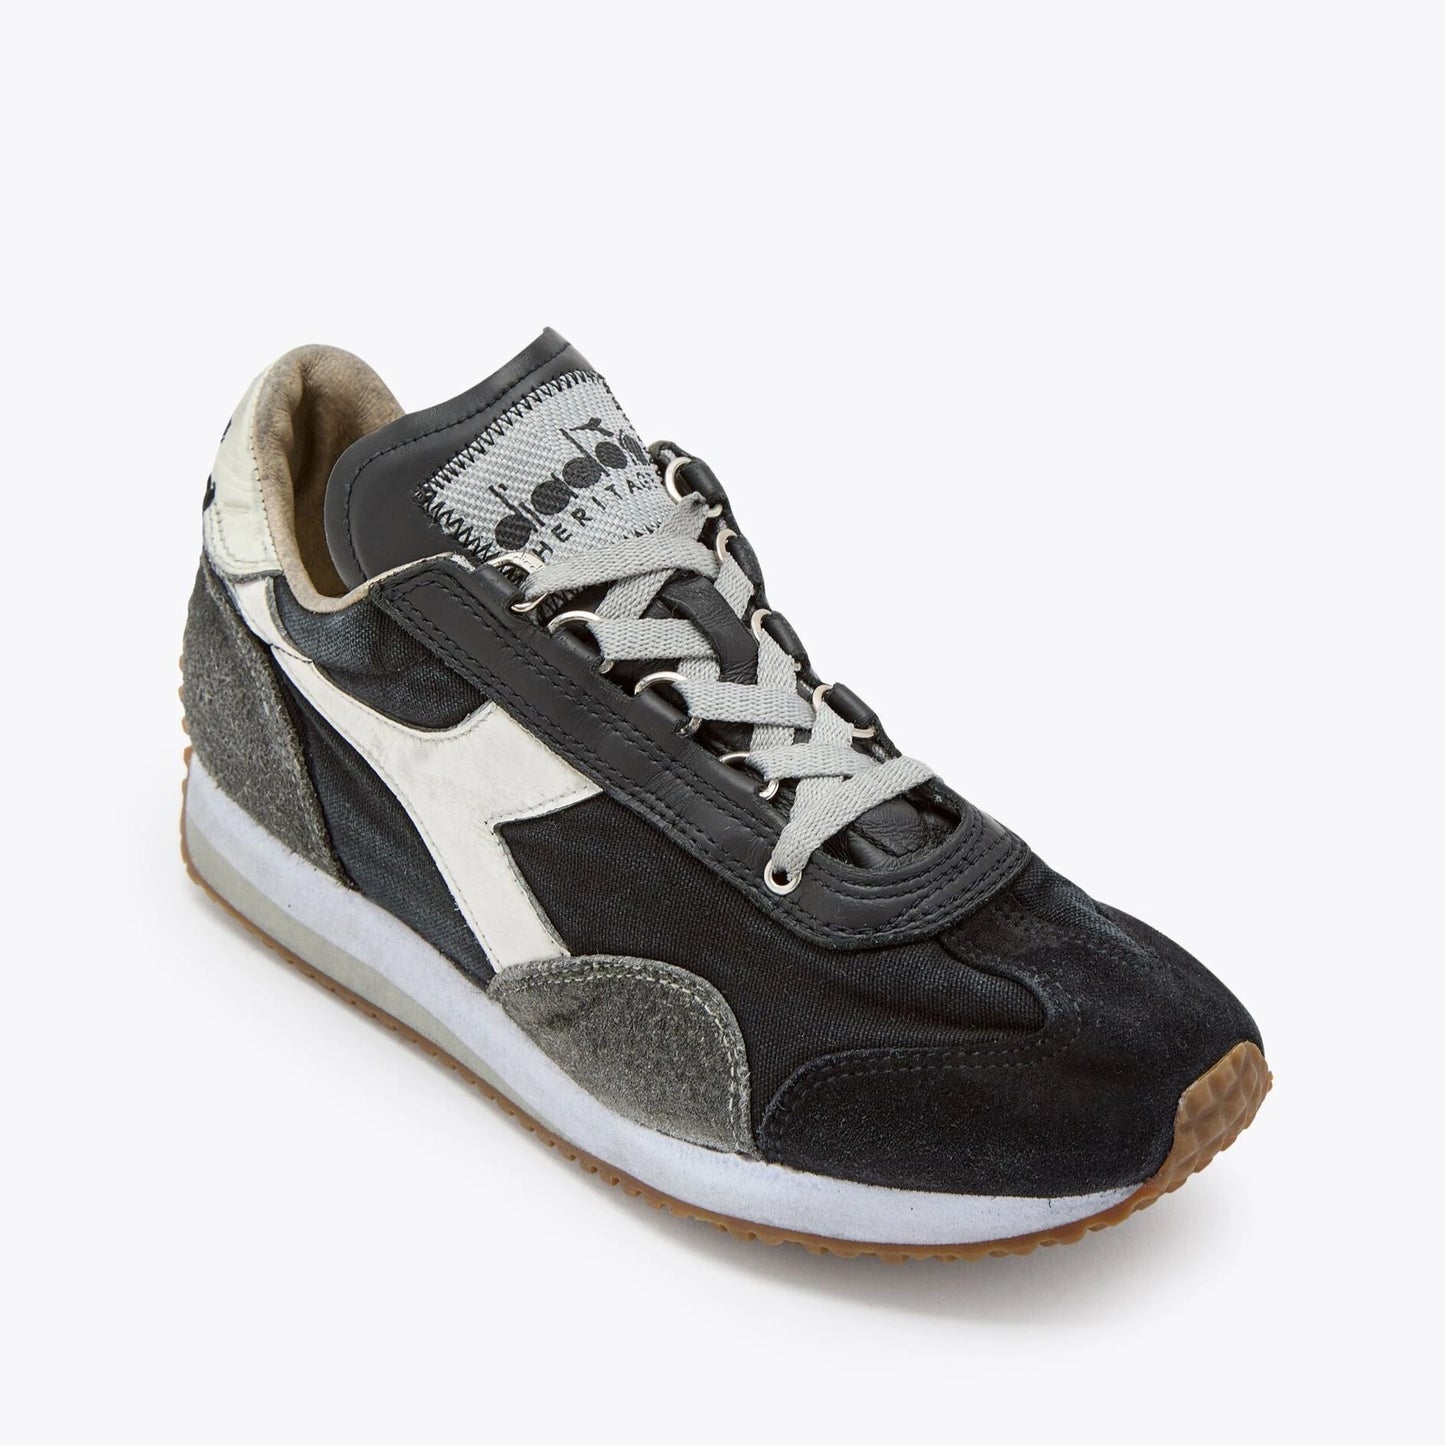 Sneakers De La Marca Diadora Para Unisex Modelo Equipe H Dirty Stone Wash Evo Black/Gray En Color Negro